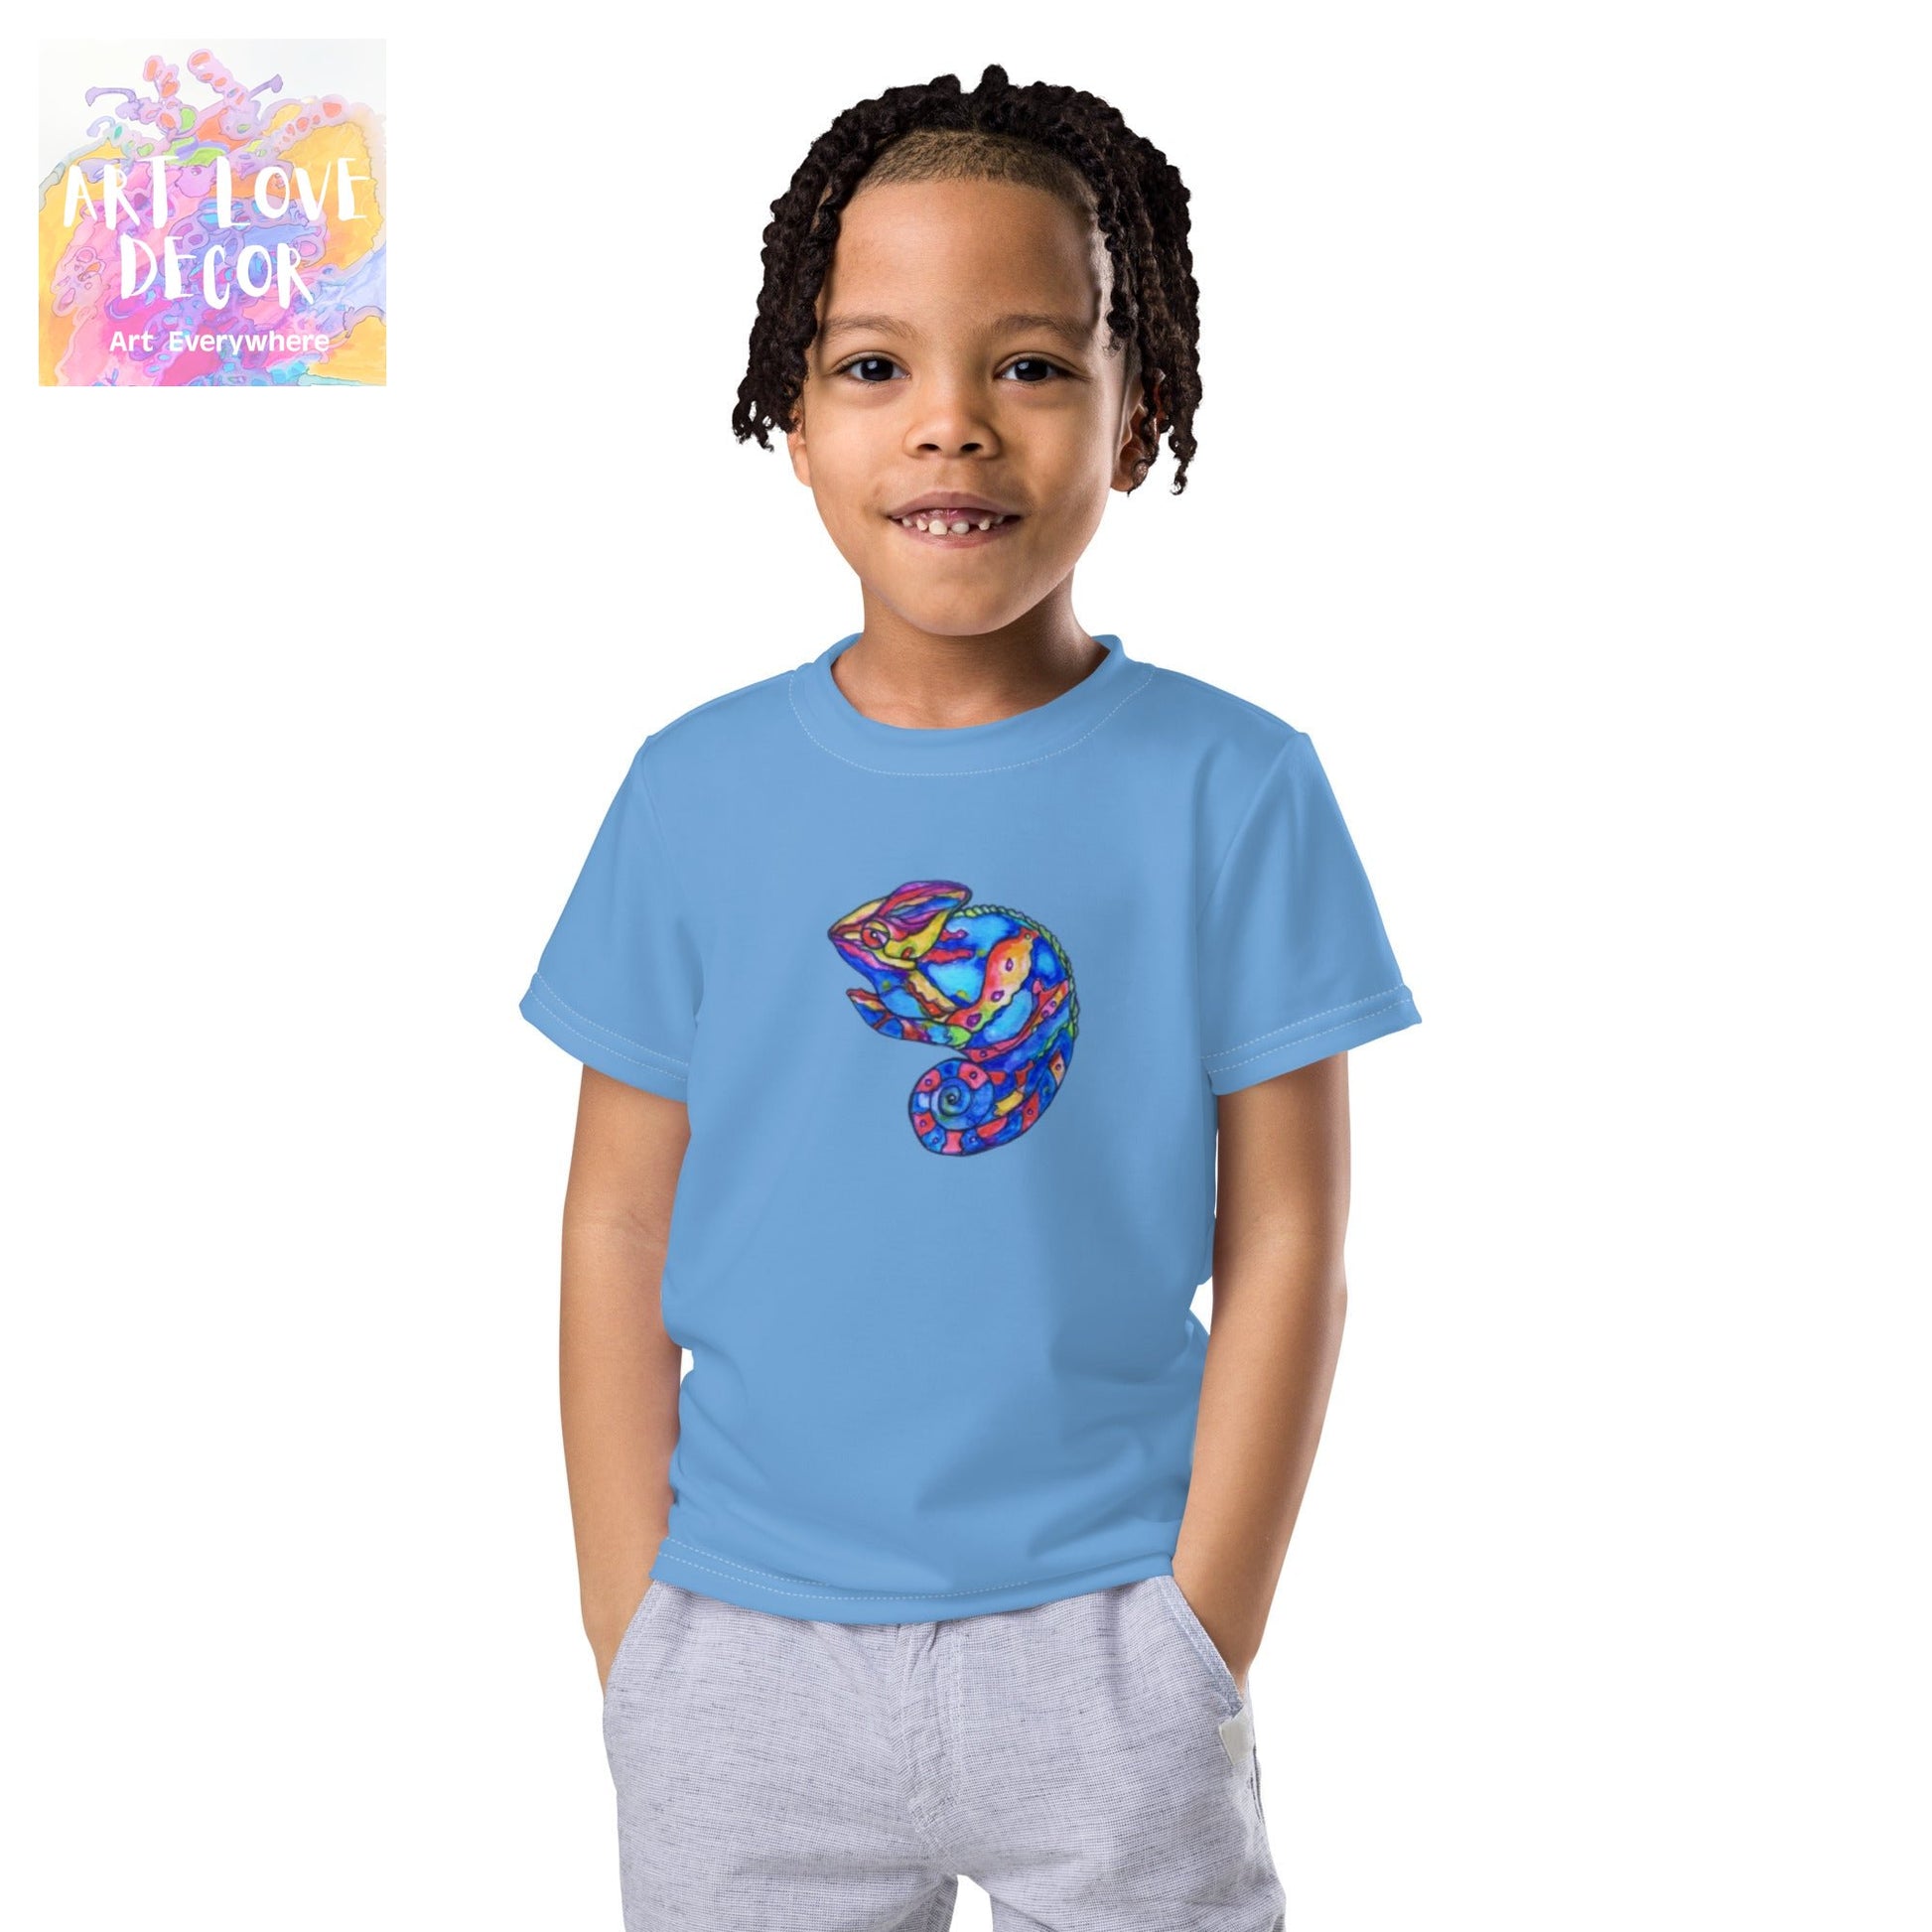 Blue Lizard Kid's T-shirt - Art Love Decor